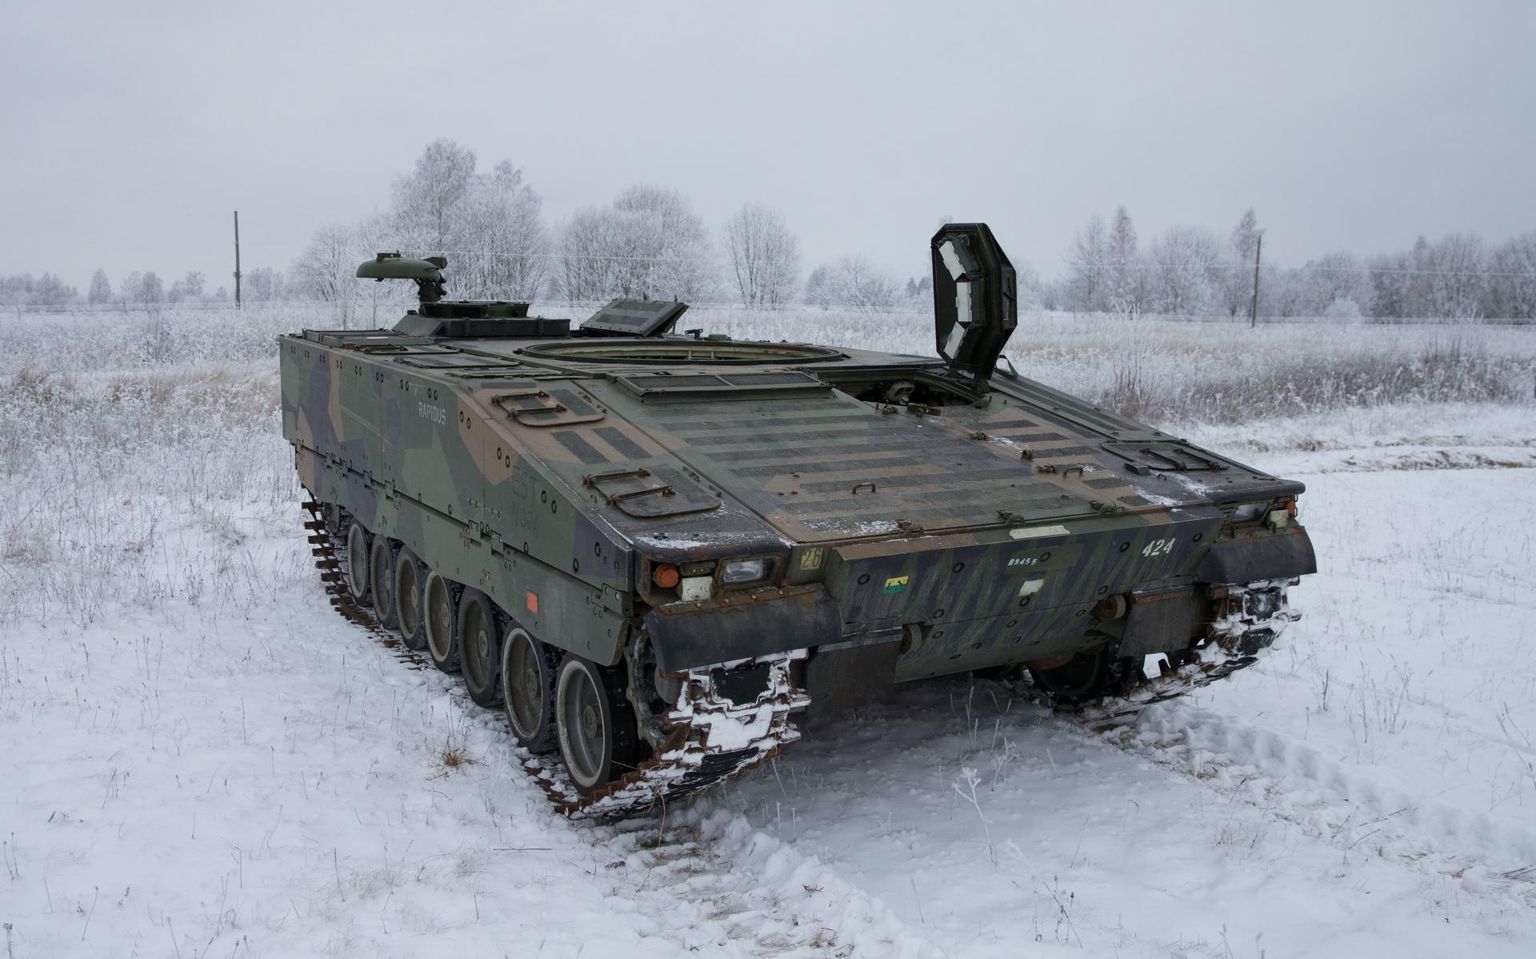 Norrast ostetud CV90 toetussoomukiteks ümber ehitamine toppab, sest masinate tootjafirma keeras varuosade saamise võimaluse teistele kinni.  